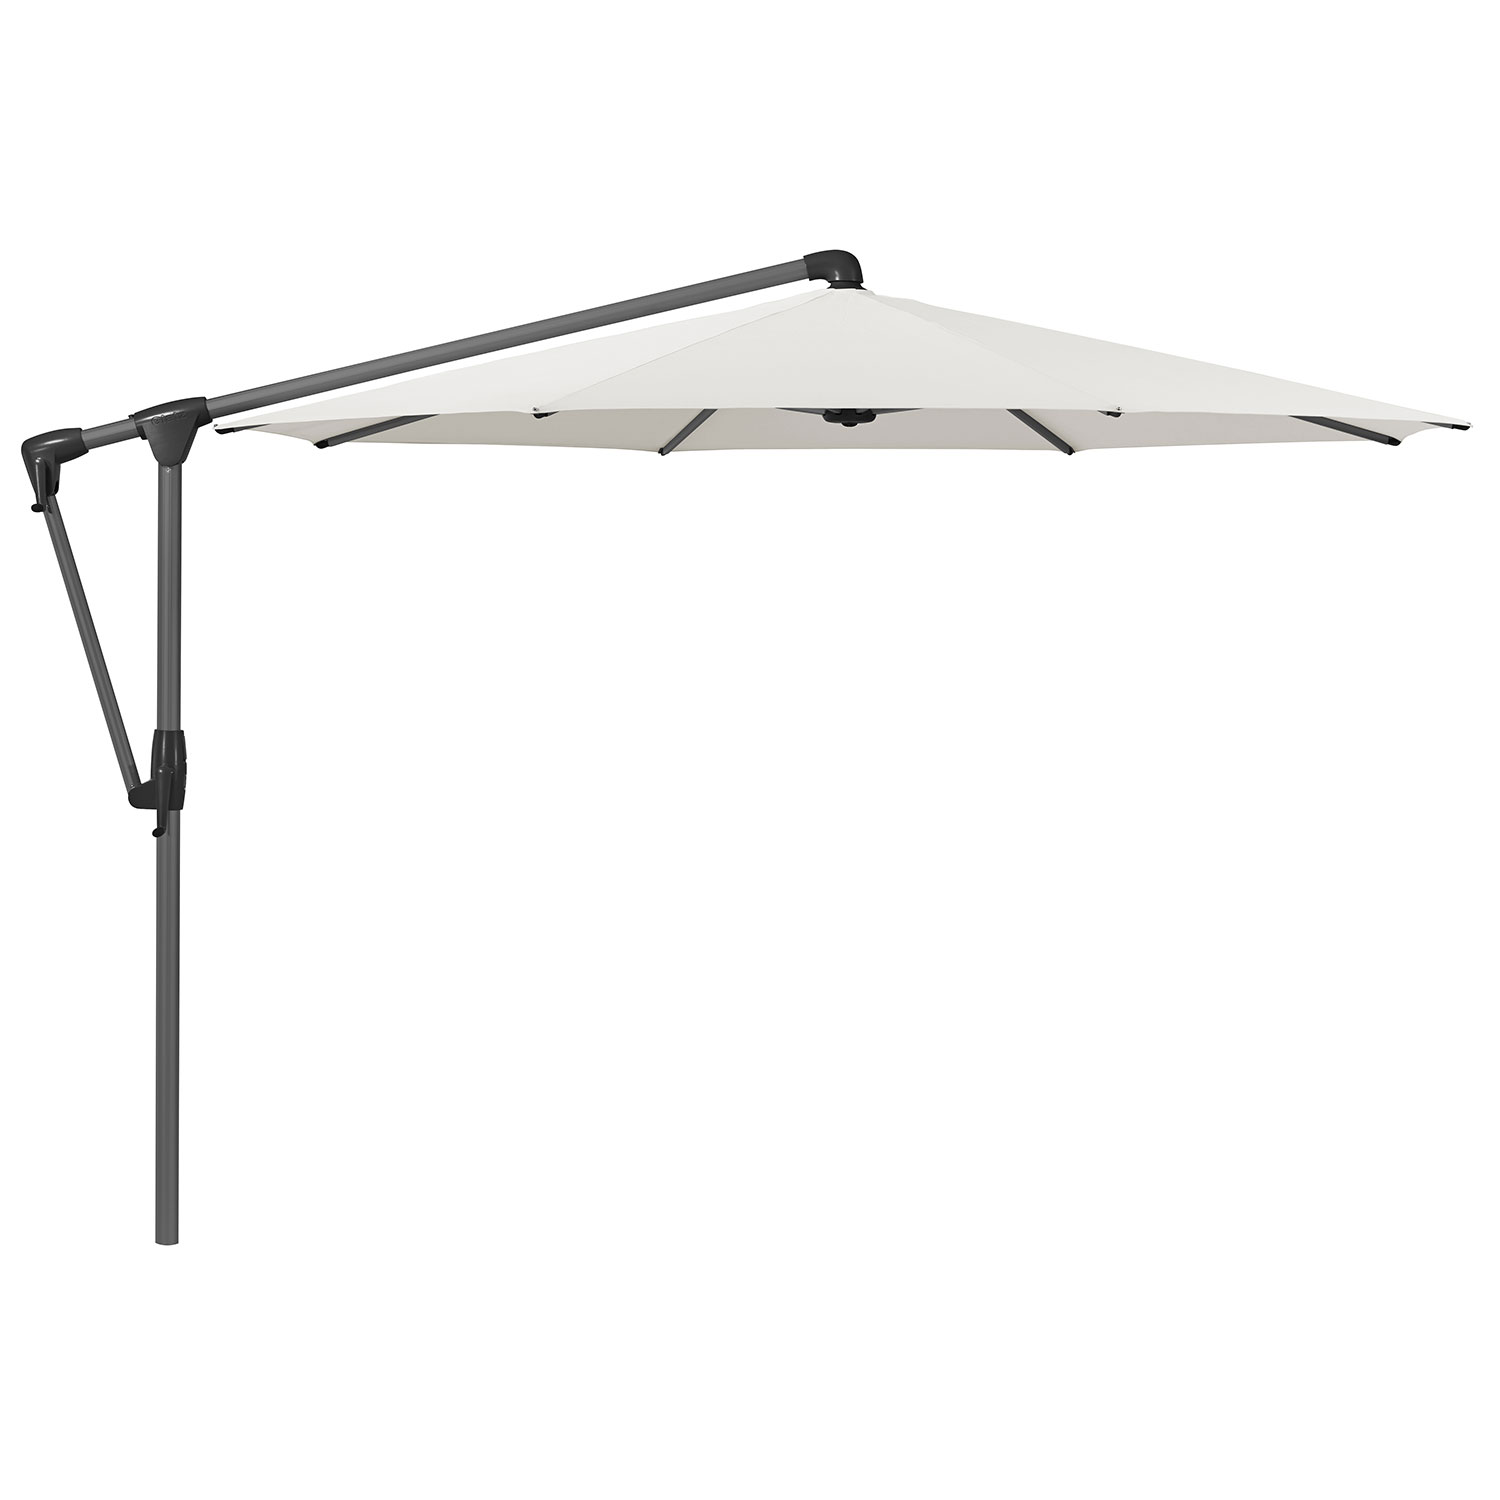 Sunwing Casa frihängande parasoll 330 cm kat.5 antracite alu / 500 plaster